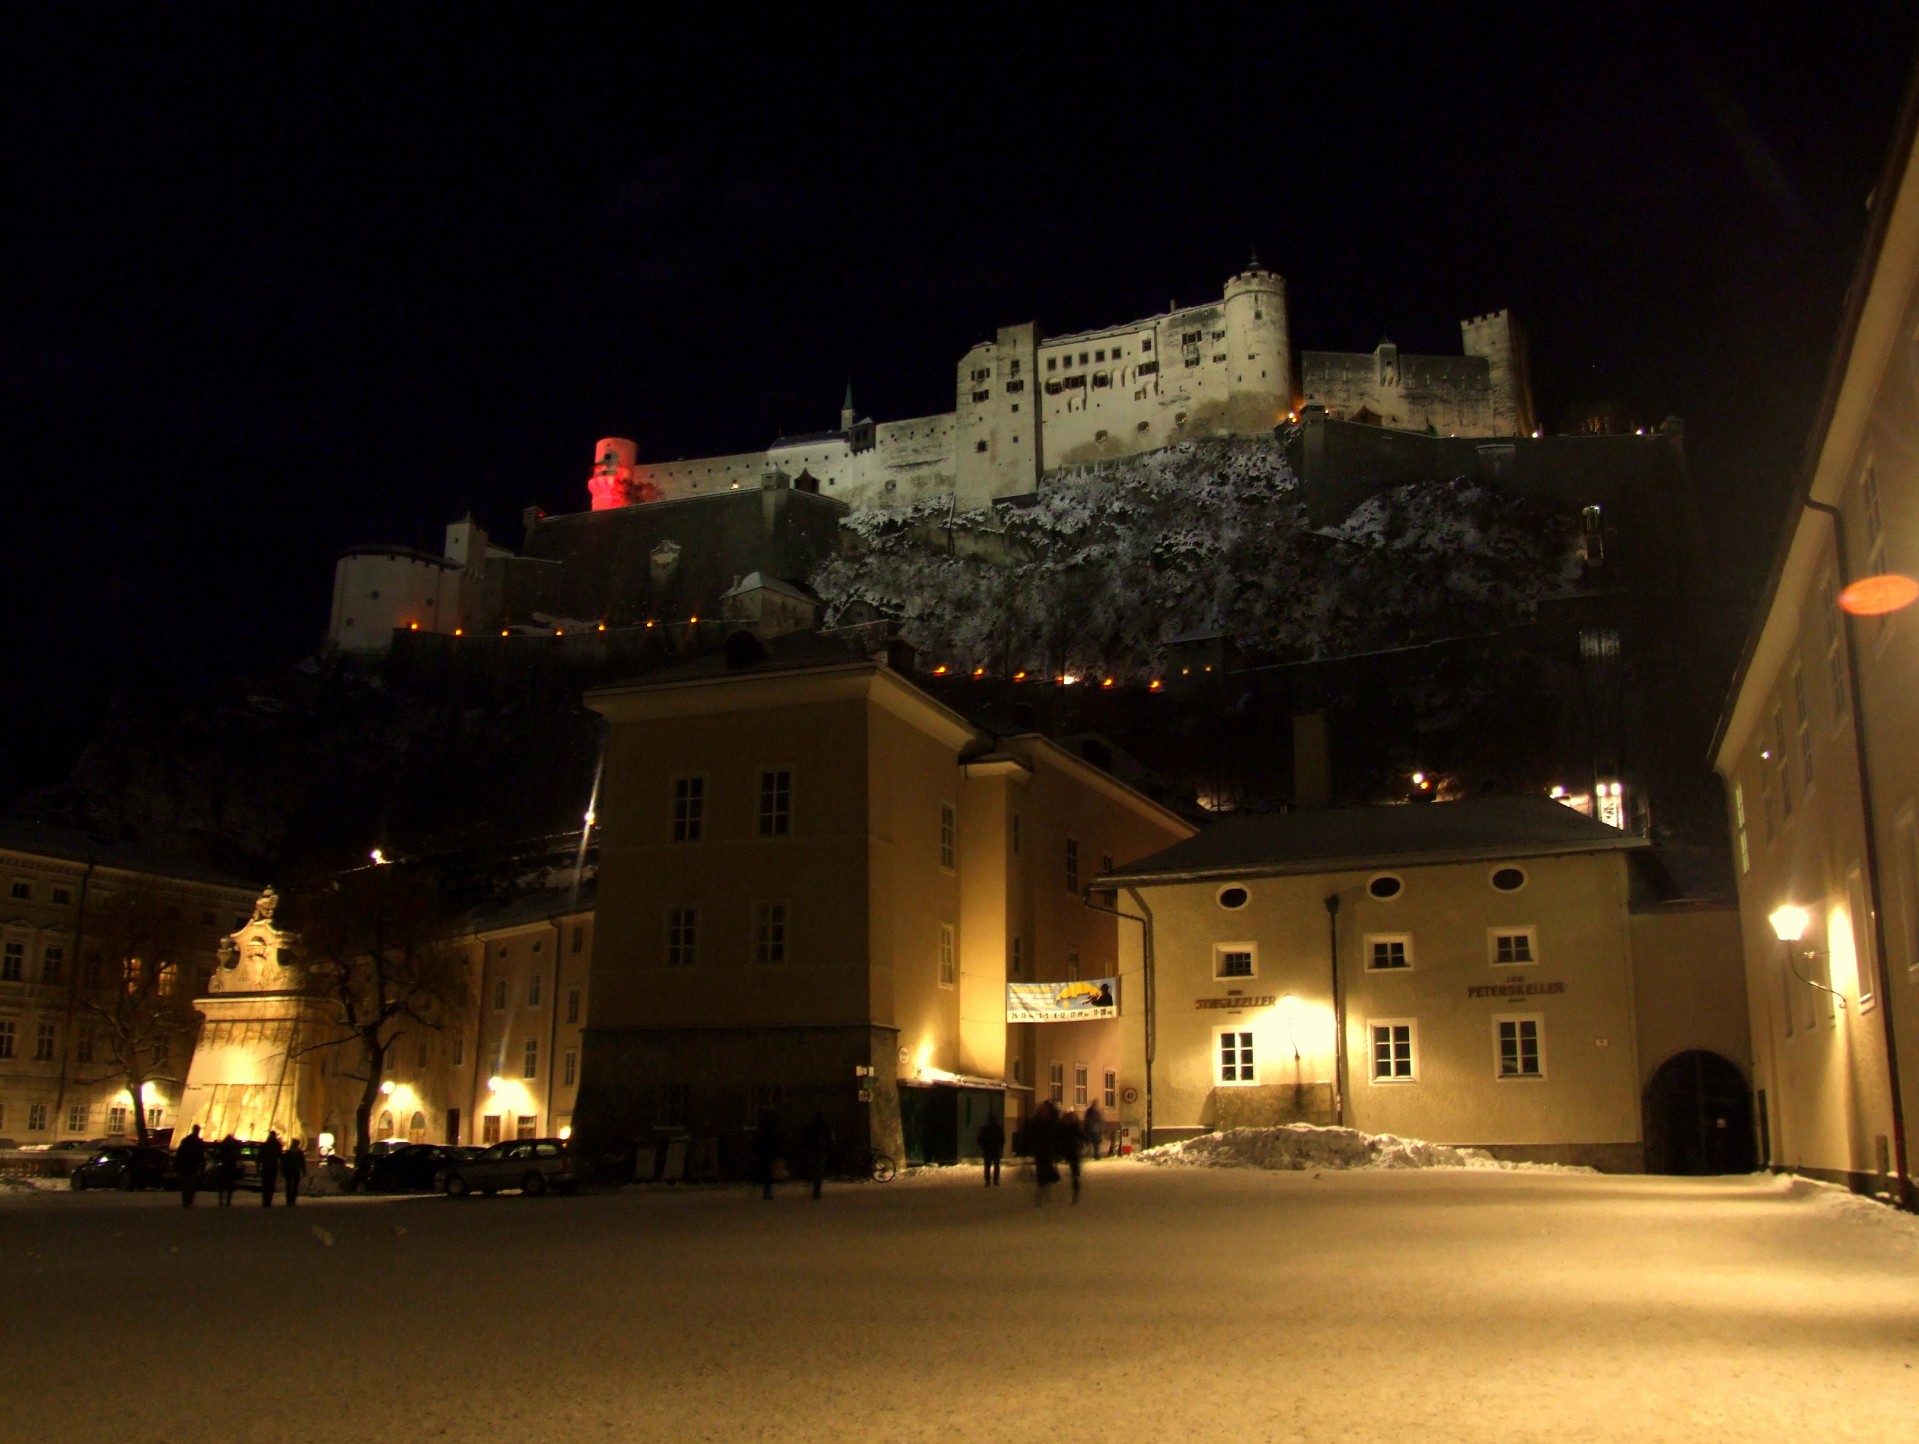 Noapte Salzburg